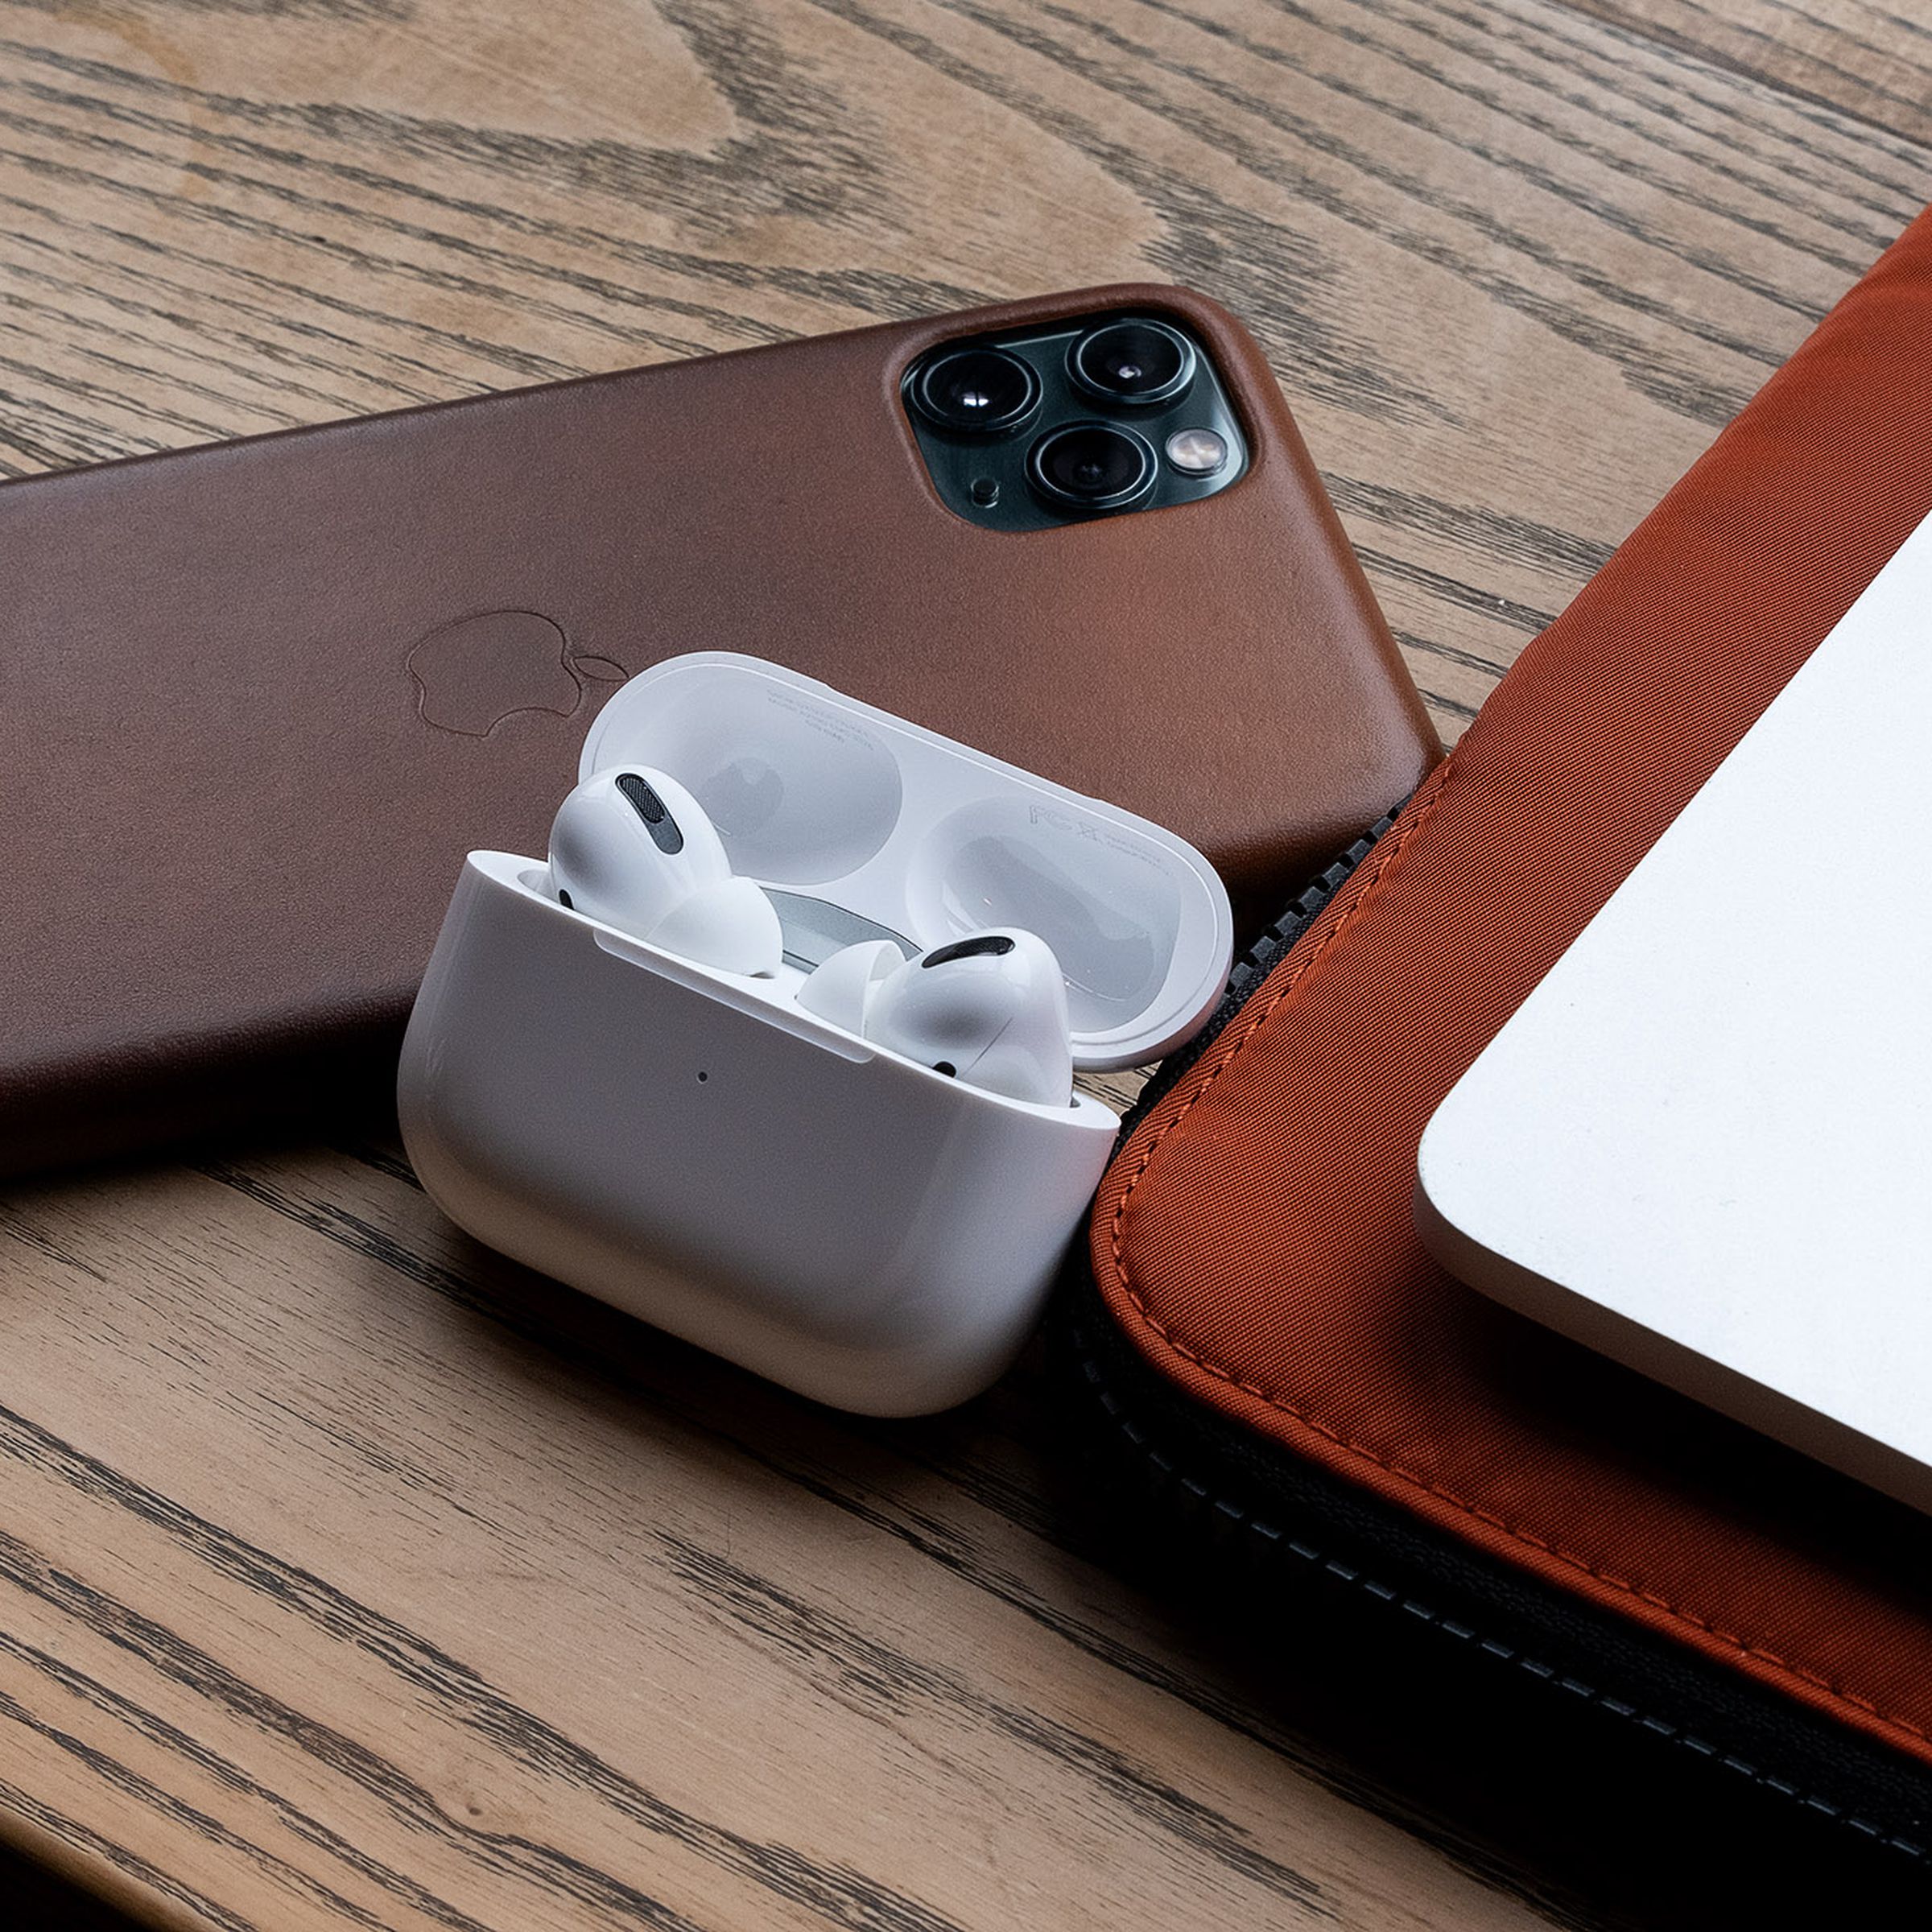 AirPods Pro, tai nghe không dây tốt nhất dành cho những người sử dụng các sản phẩm của Apple, được chụp bên cạnh iPhone 11 Pro Max và MacBook Pro.